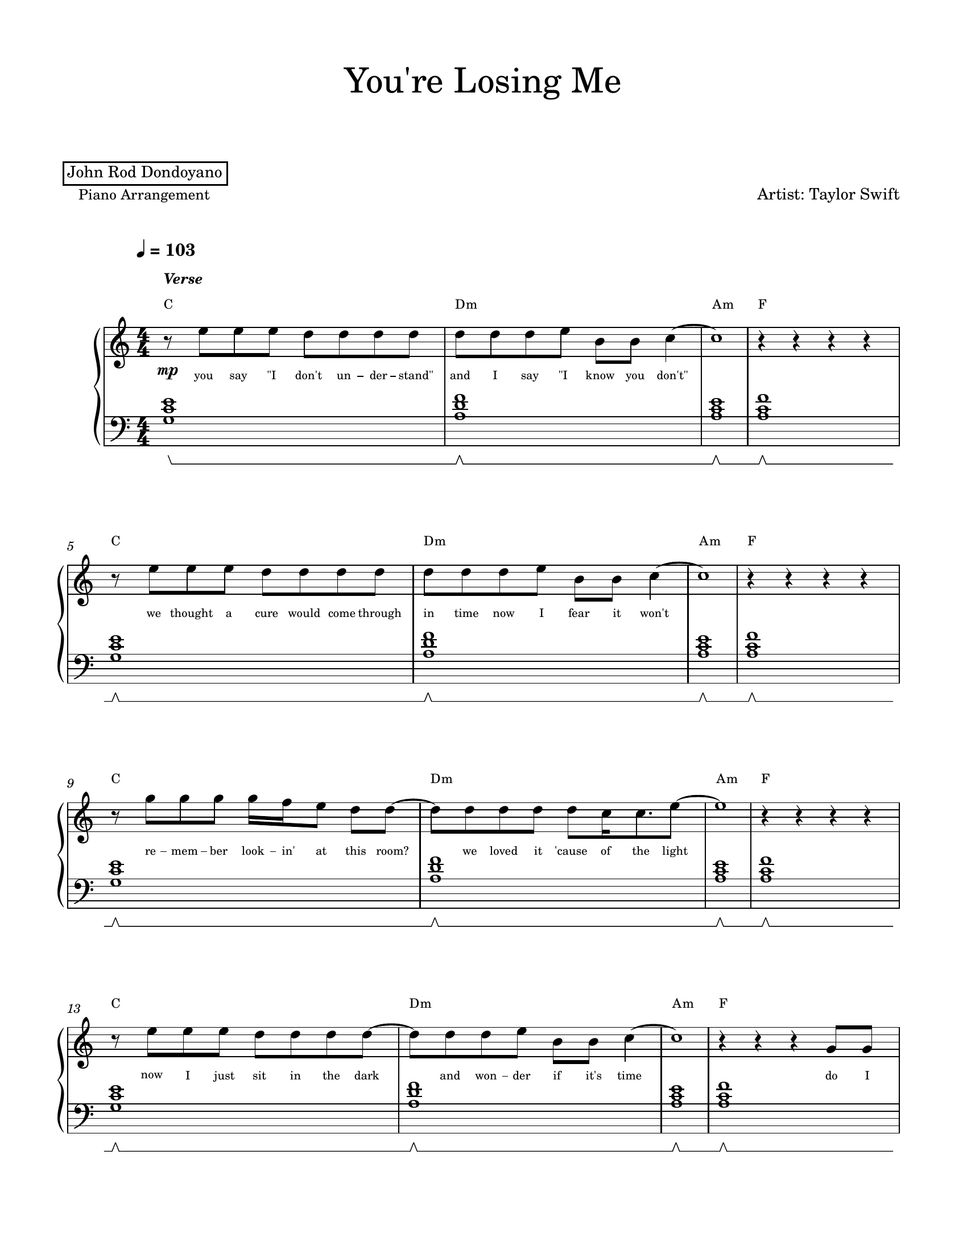 Taylor Swift - You're Losing Me (PIANO SHEET) by John Rod Dondoyano